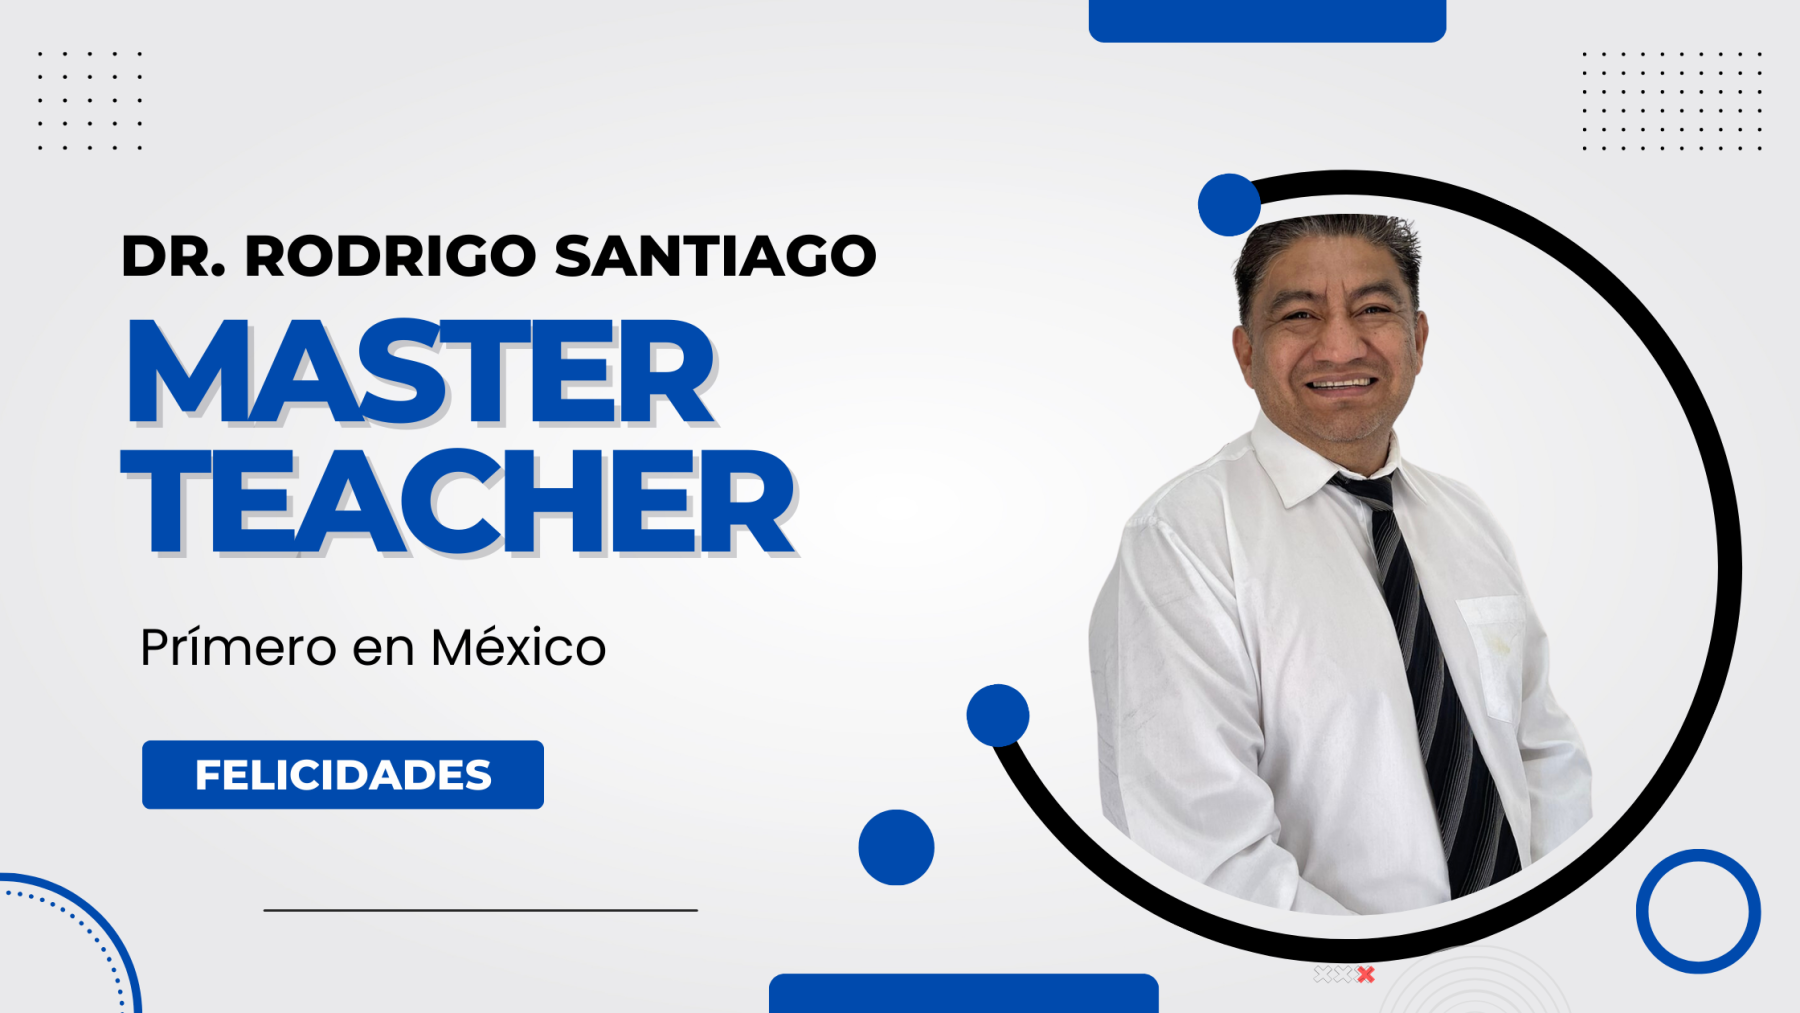 Master Teacher en México. Dr. Rodrigo Santiago.